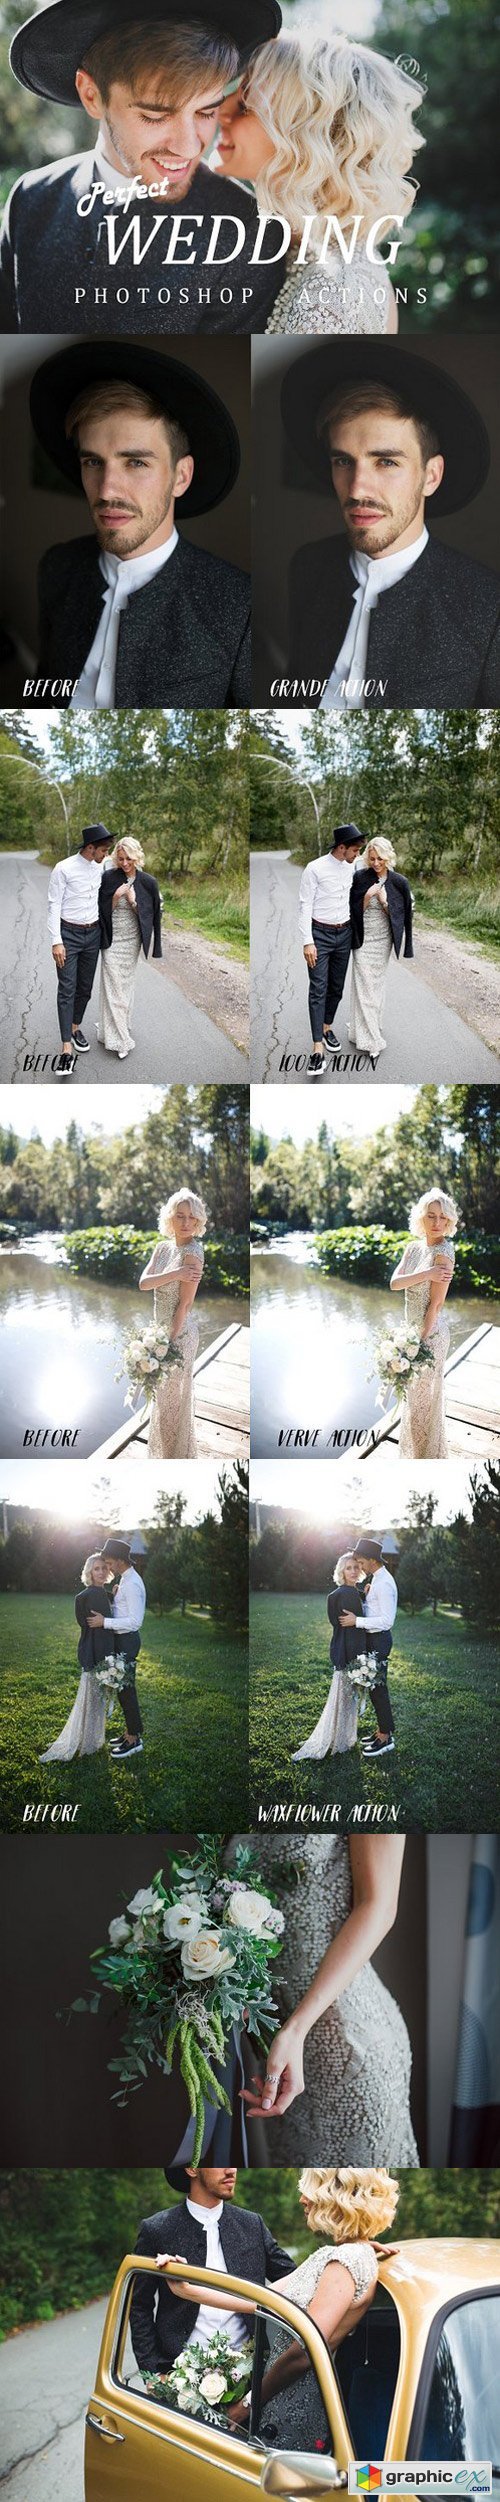 Photoshop wedding actions